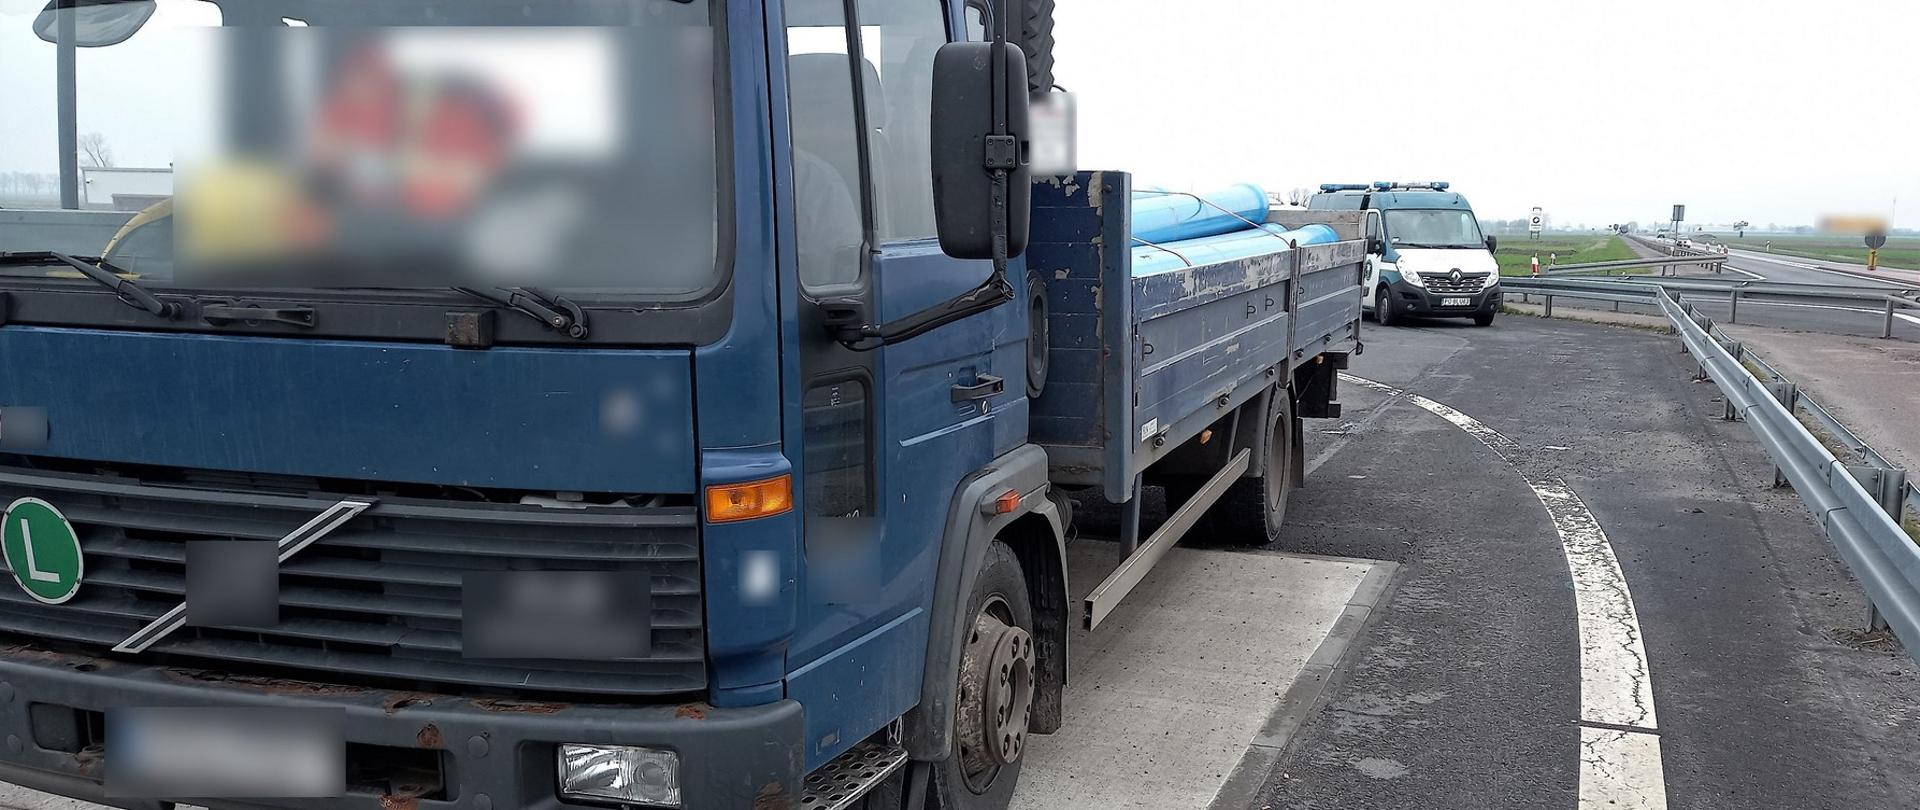 Zły stan techniczny ciężarówki odkryli inspektorzy z Leszna